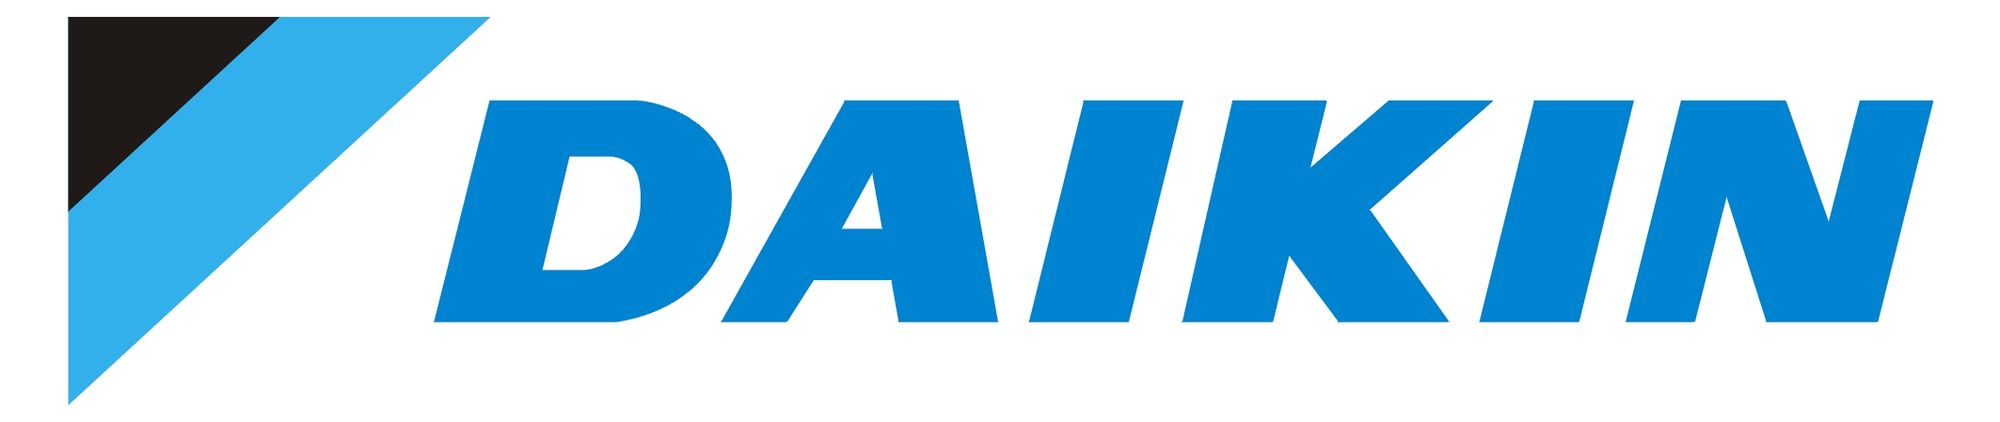 Logo daikin 1 - Daikin Air Conditioning